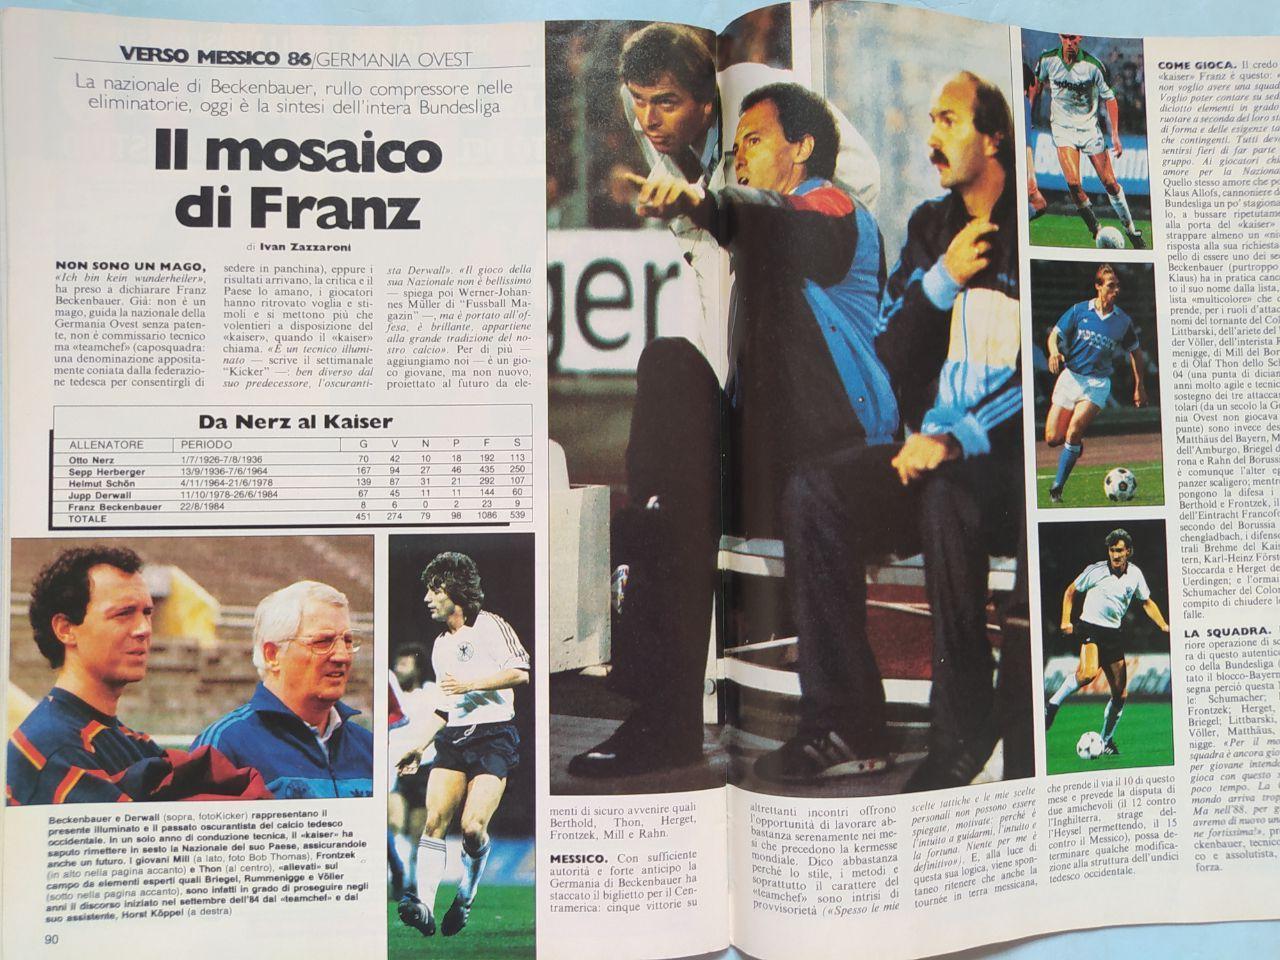 Журнал Гуэрин спортиво Guerin Sportivo 23 - 1985 Эйзельская трагедия 29.05.1985 6